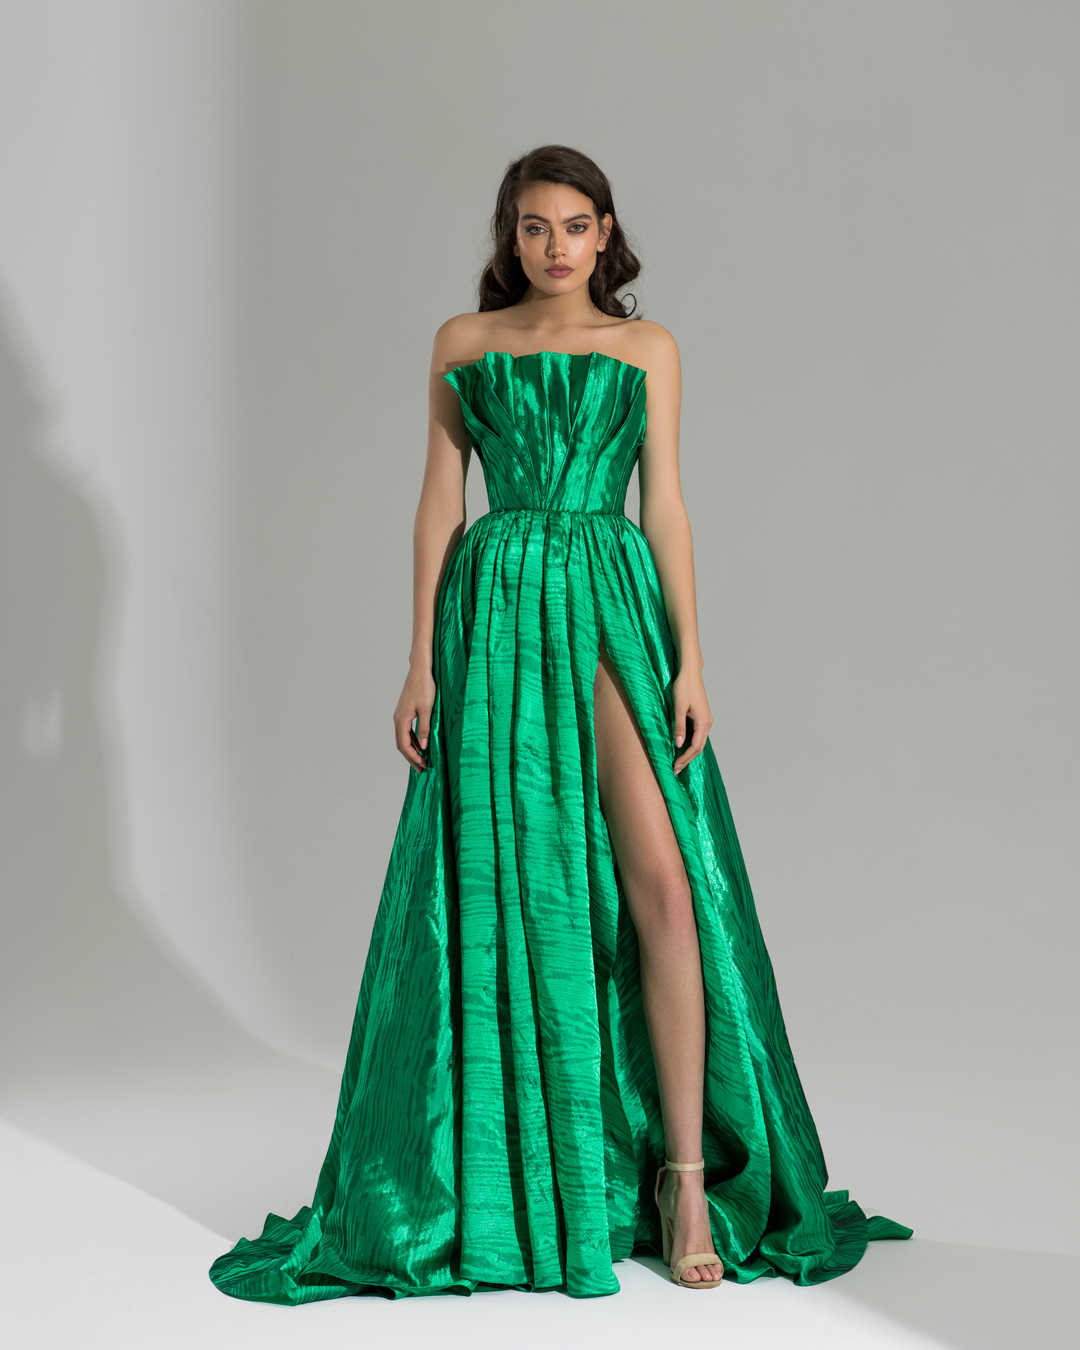 Strapless green dress